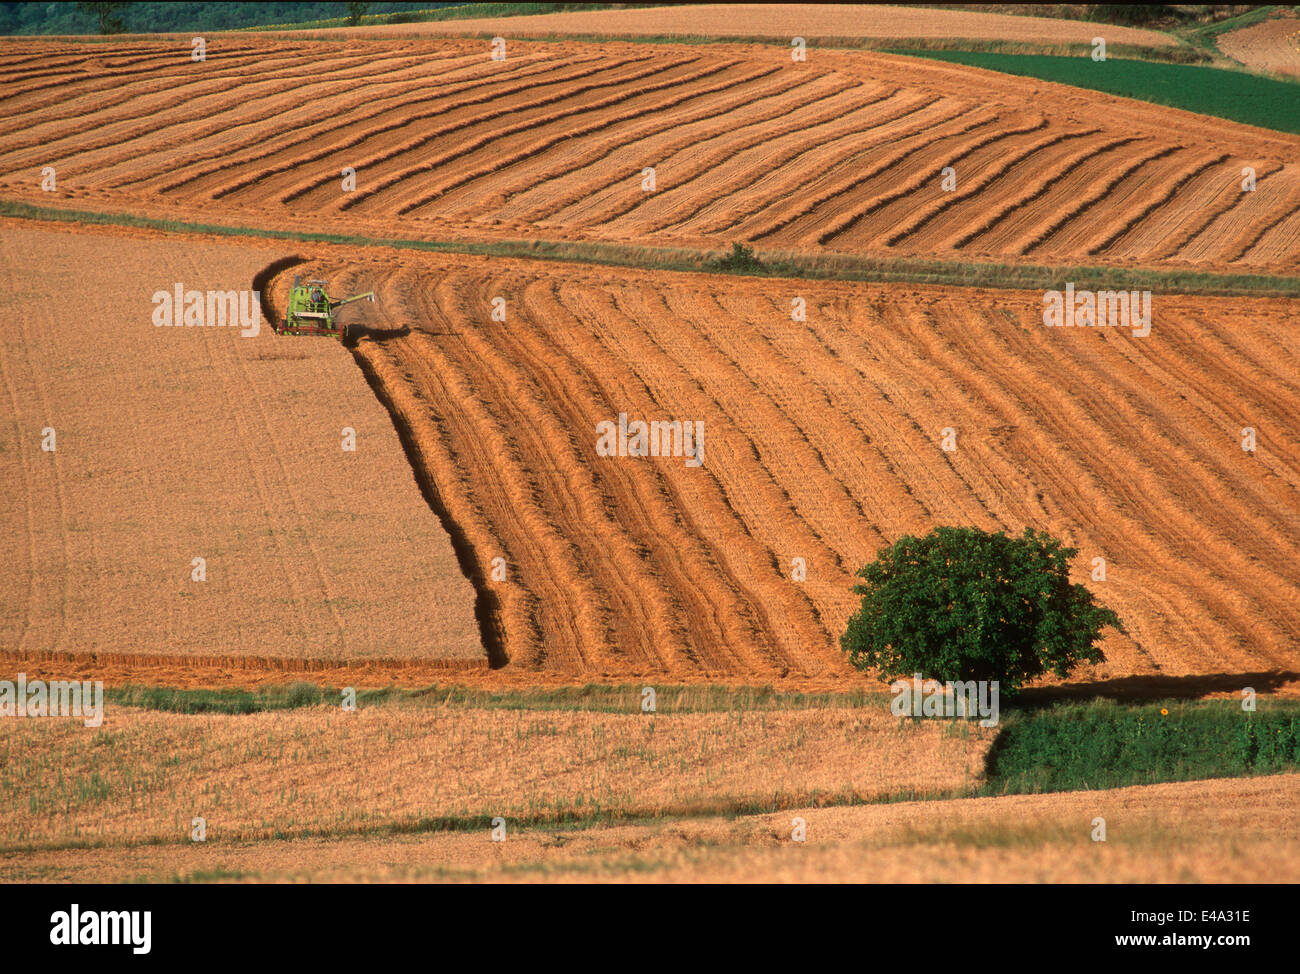 La récolte de blé dans la Limagne, Auvergne, France, Europe Banque D'Images